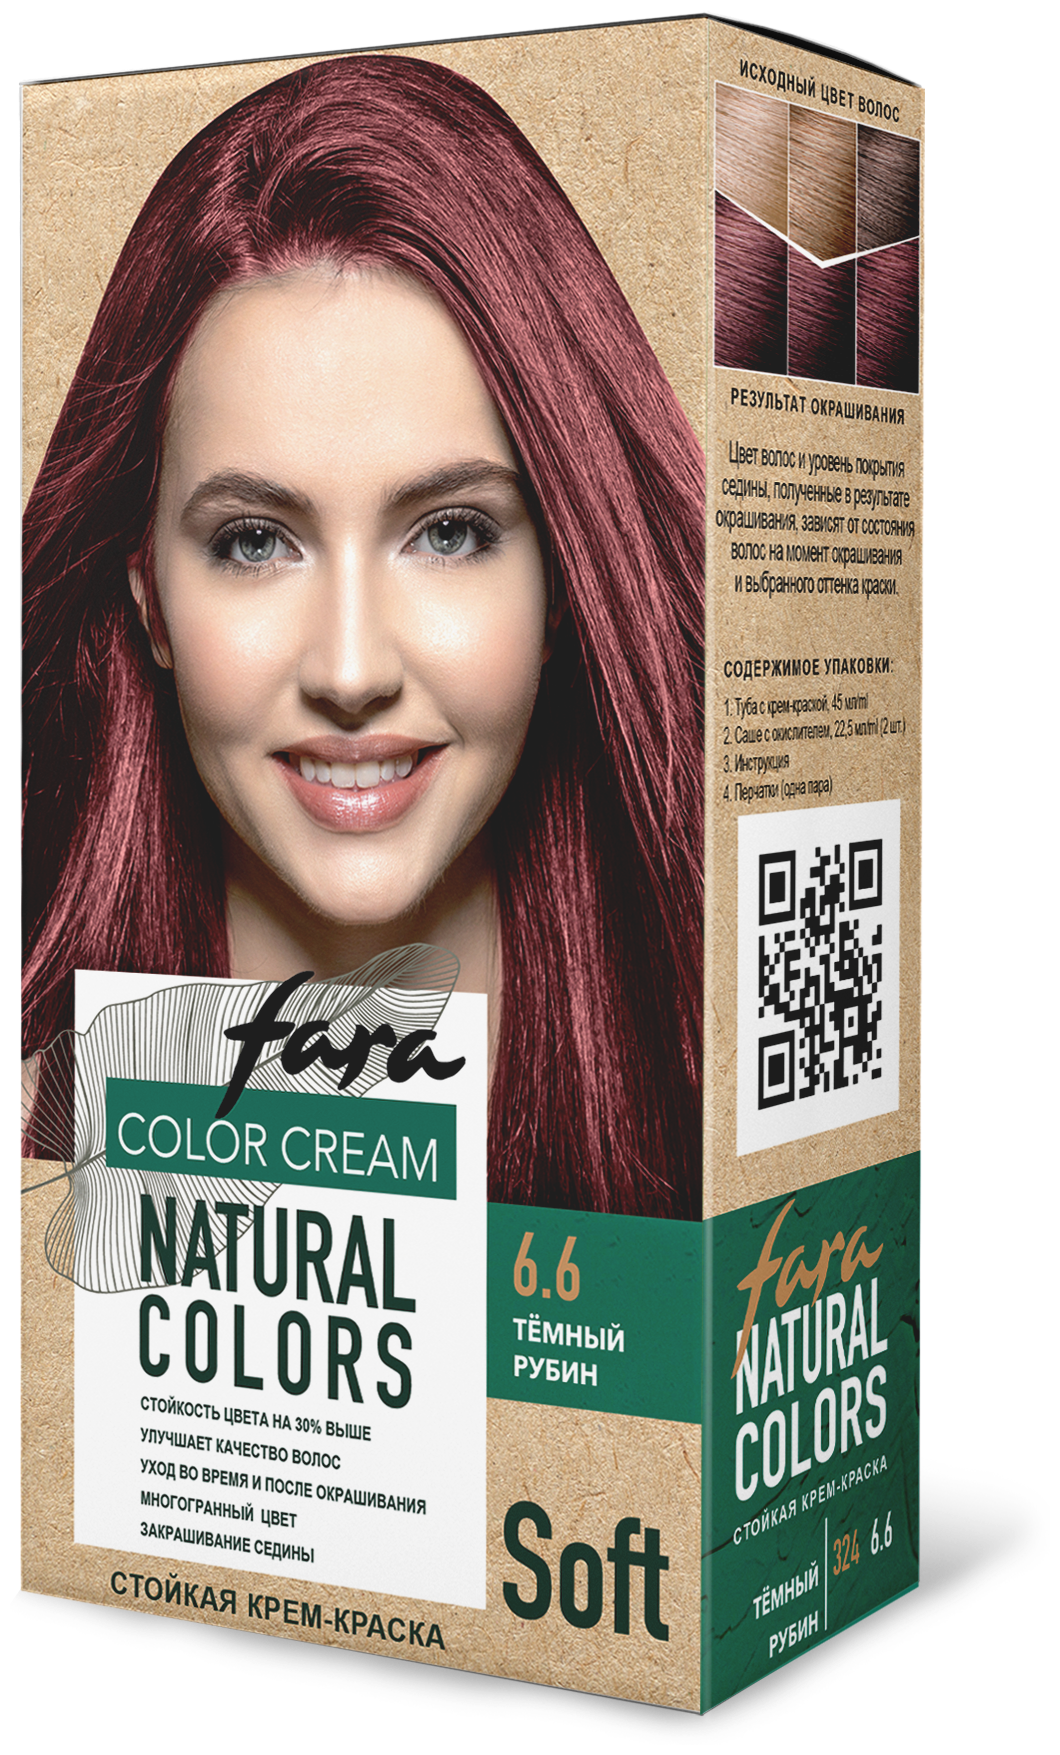 Стойкая крем-краска для волос Fara Natural Colors Soft тон 324 Темный рубин 6.6